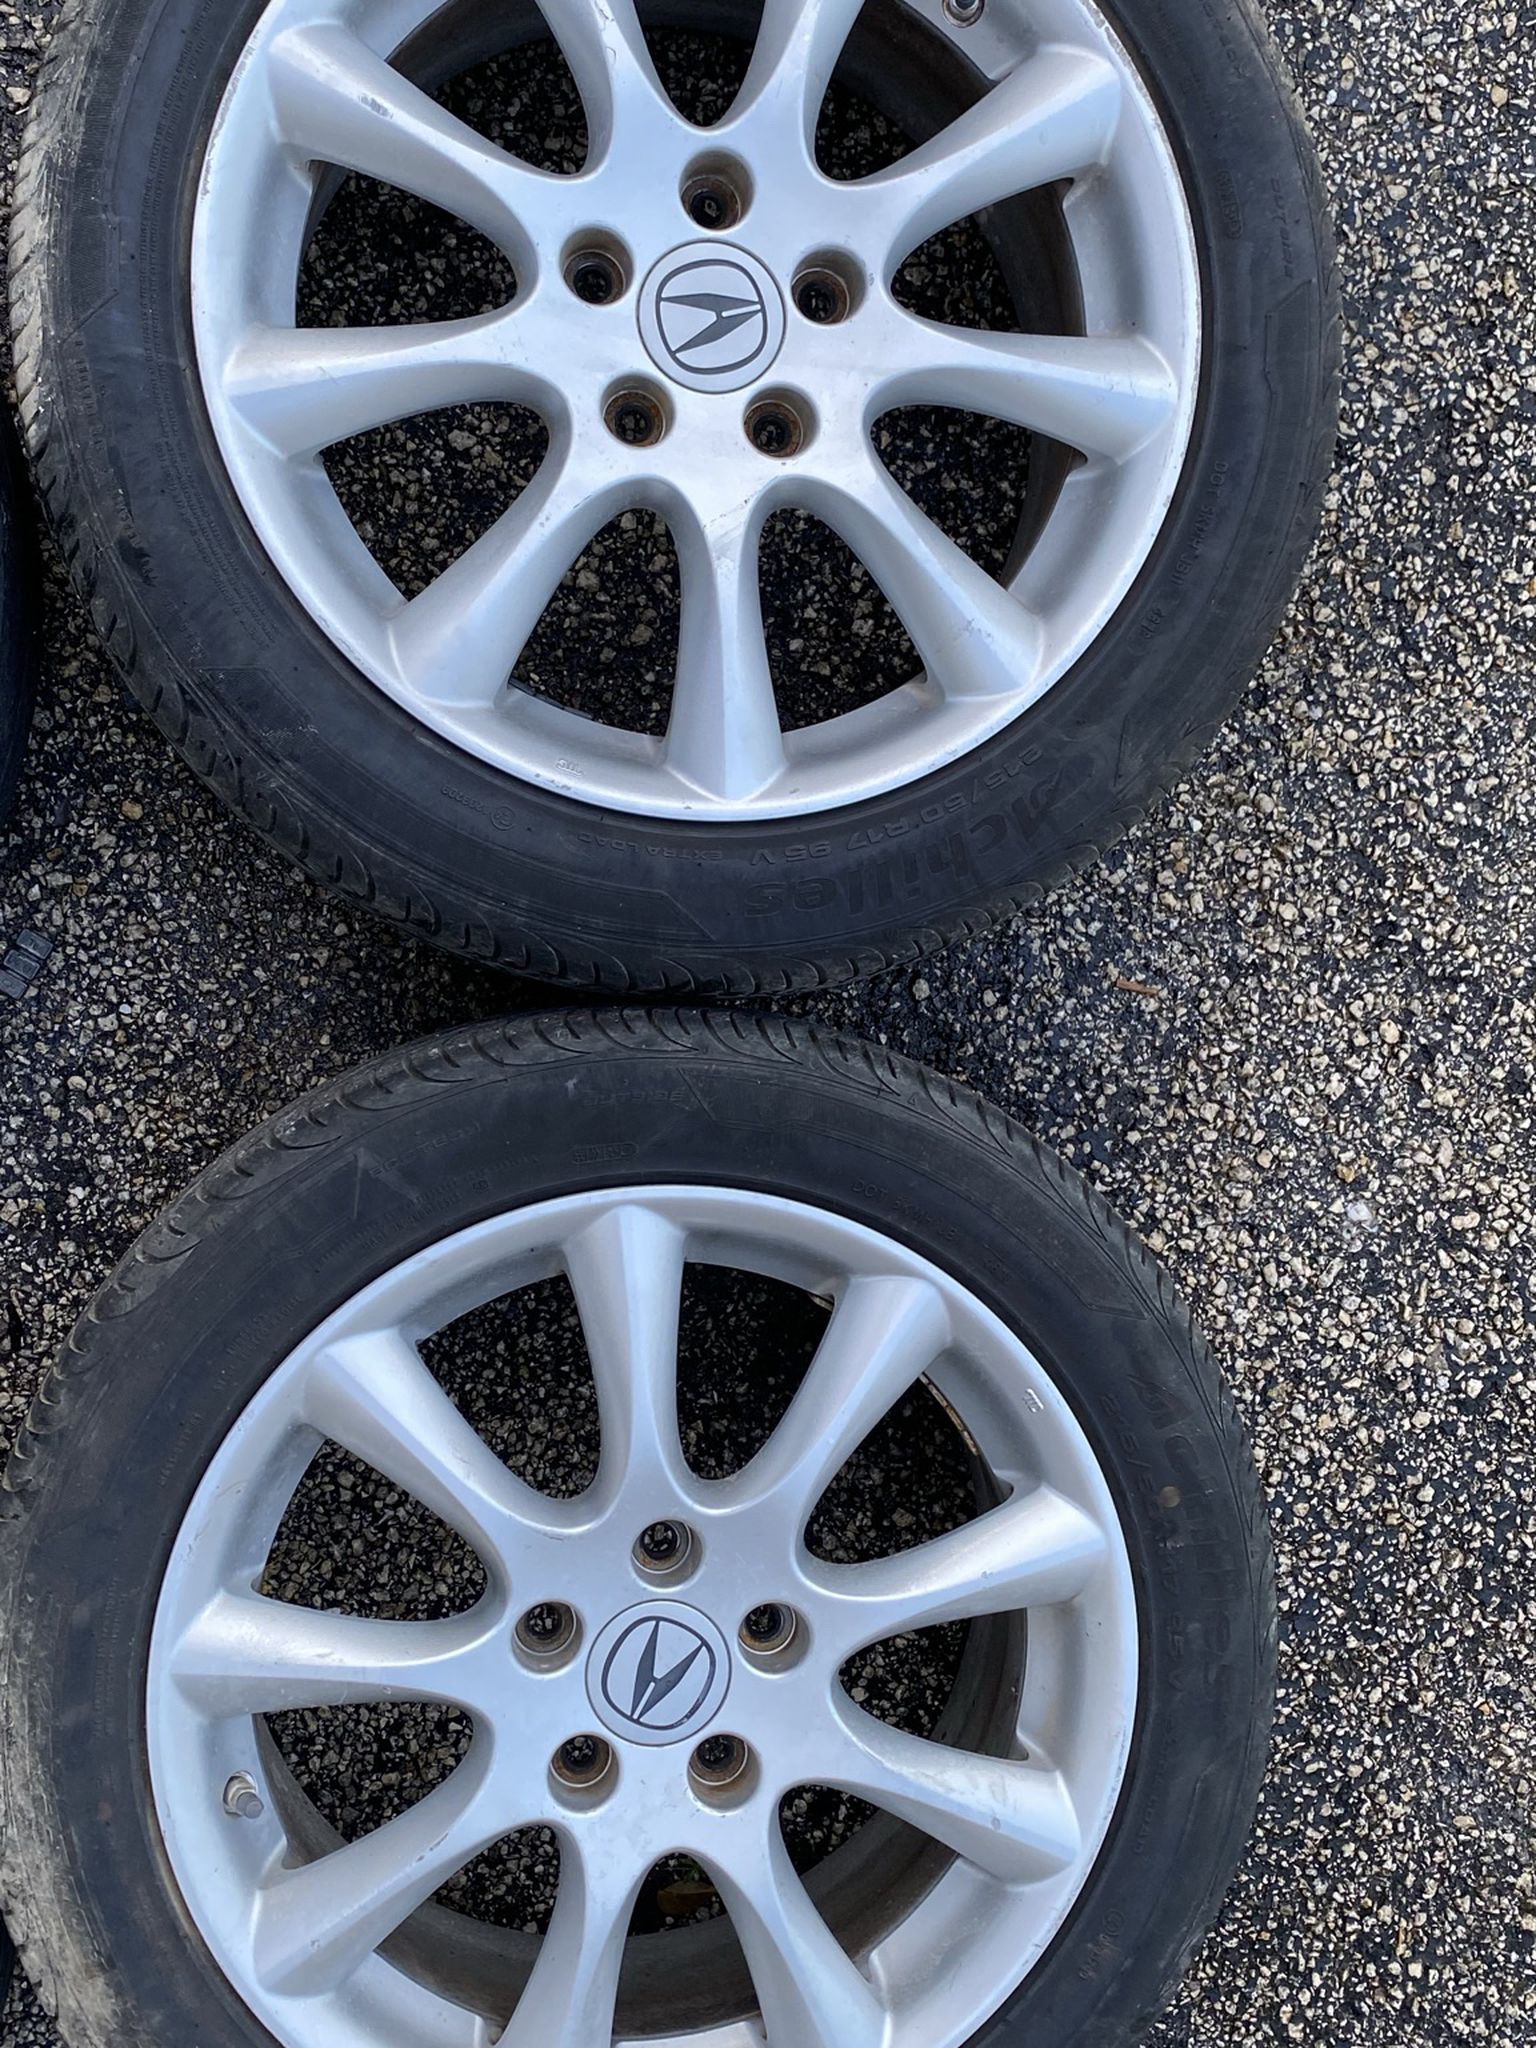 06-07 Acura TSX Wheels